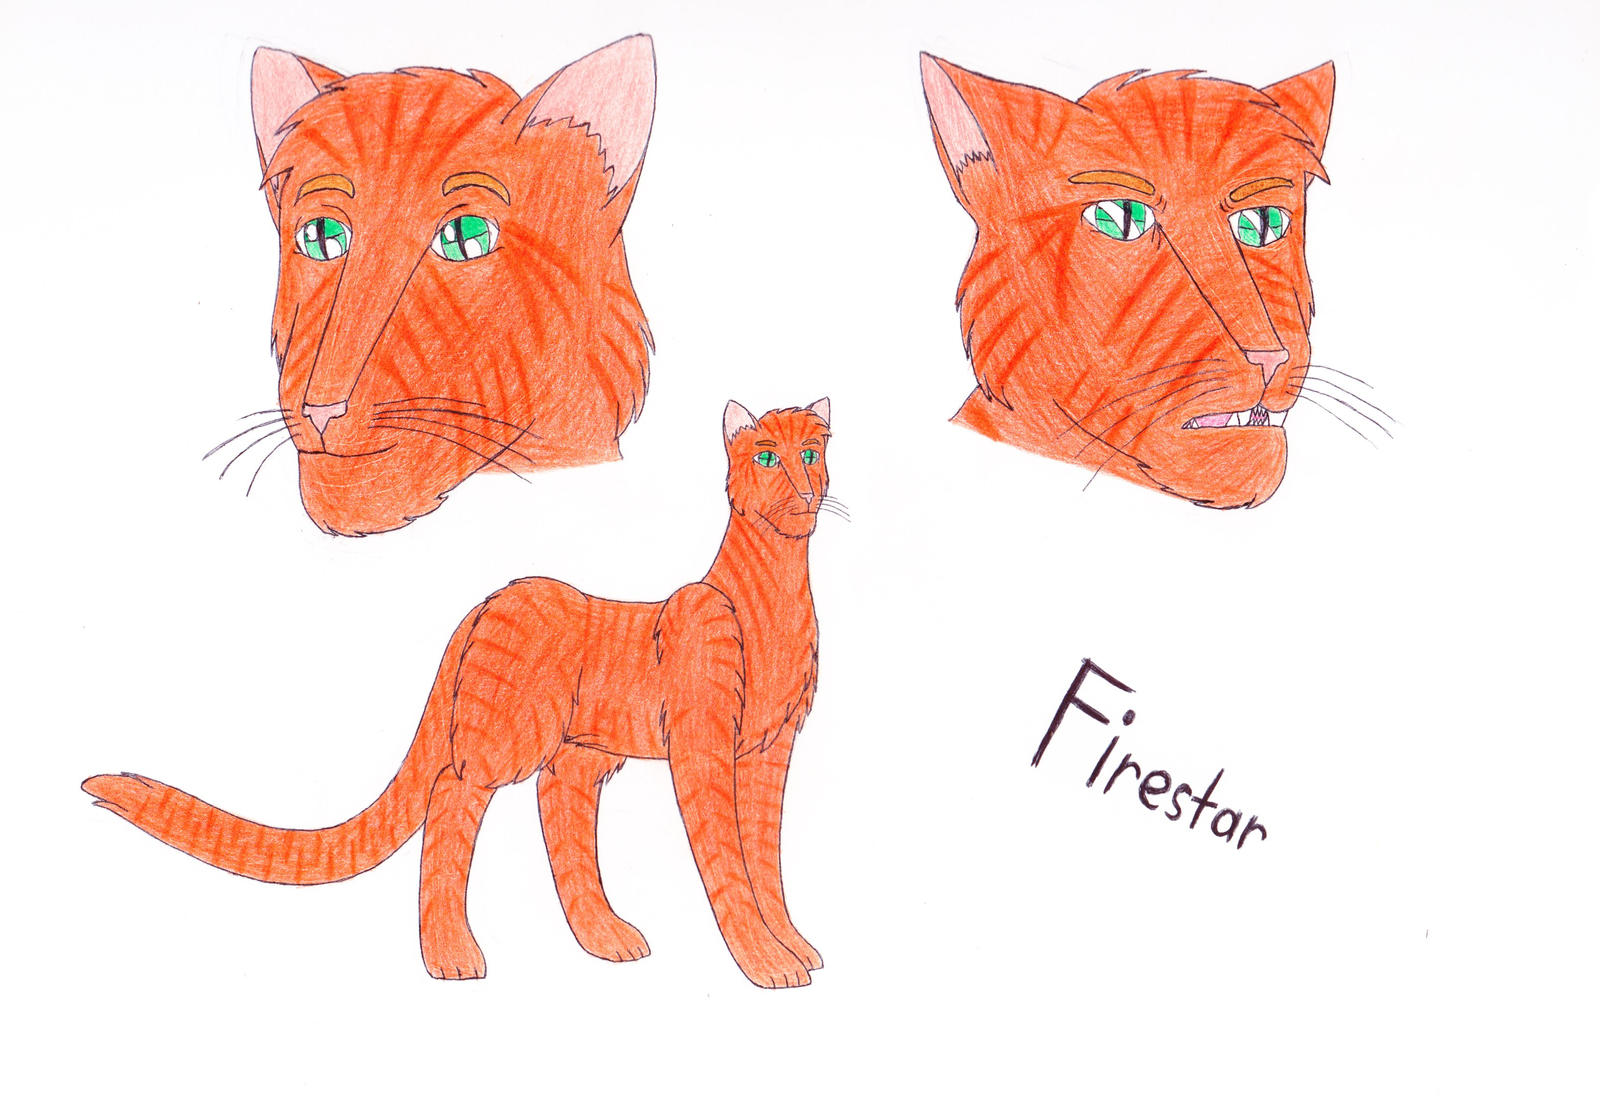 Firestar .:Warrior Cats:. rivstars - Illustrations ART street